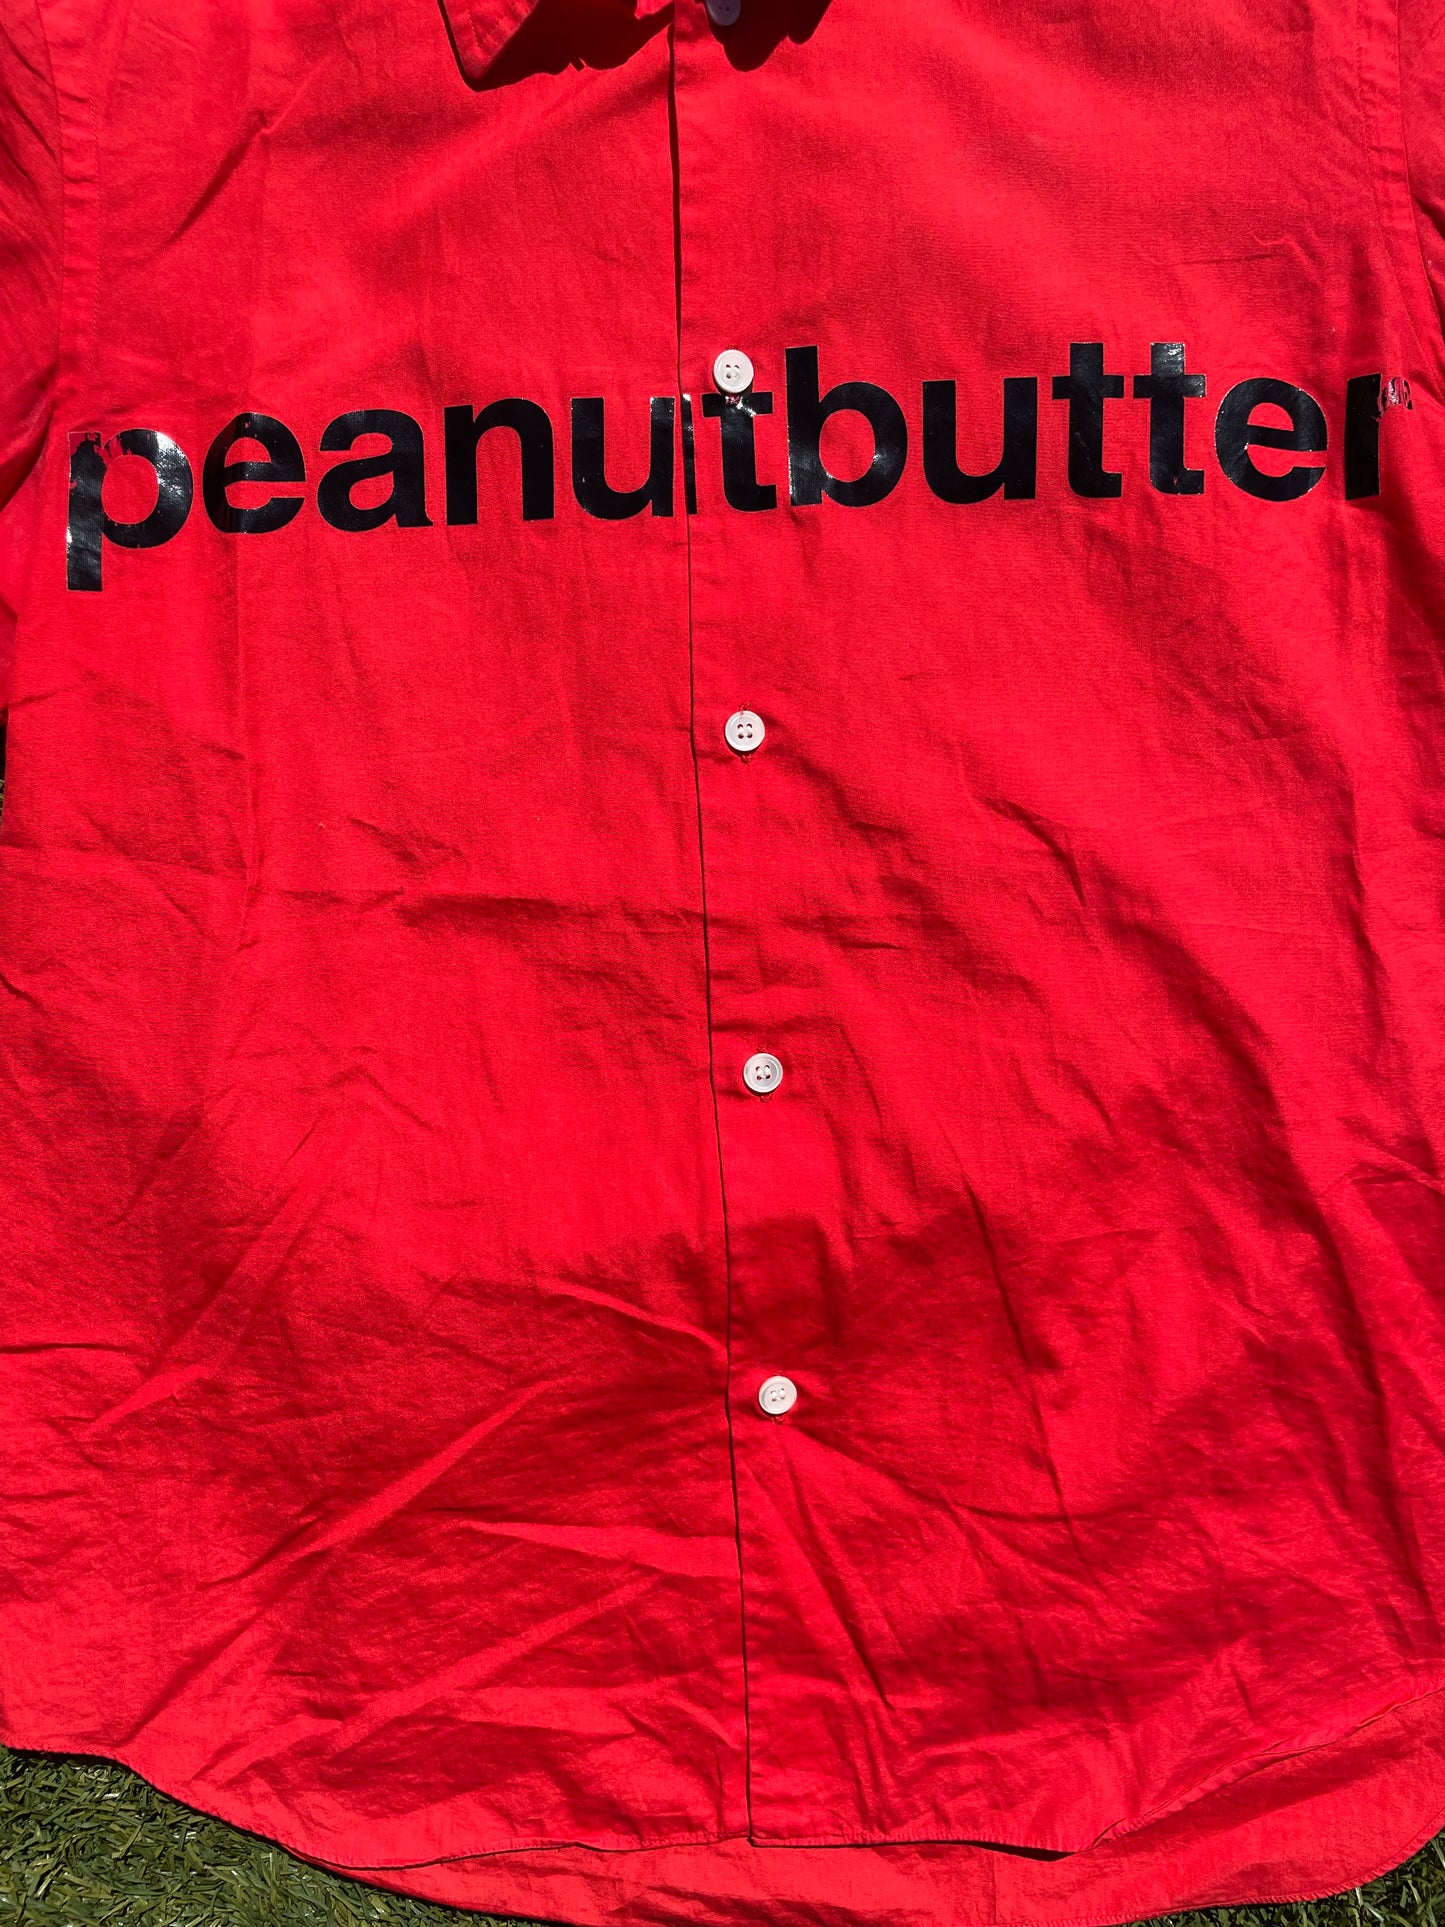 AD2001 Junya Watanabe “Peanut Butter” Button Up